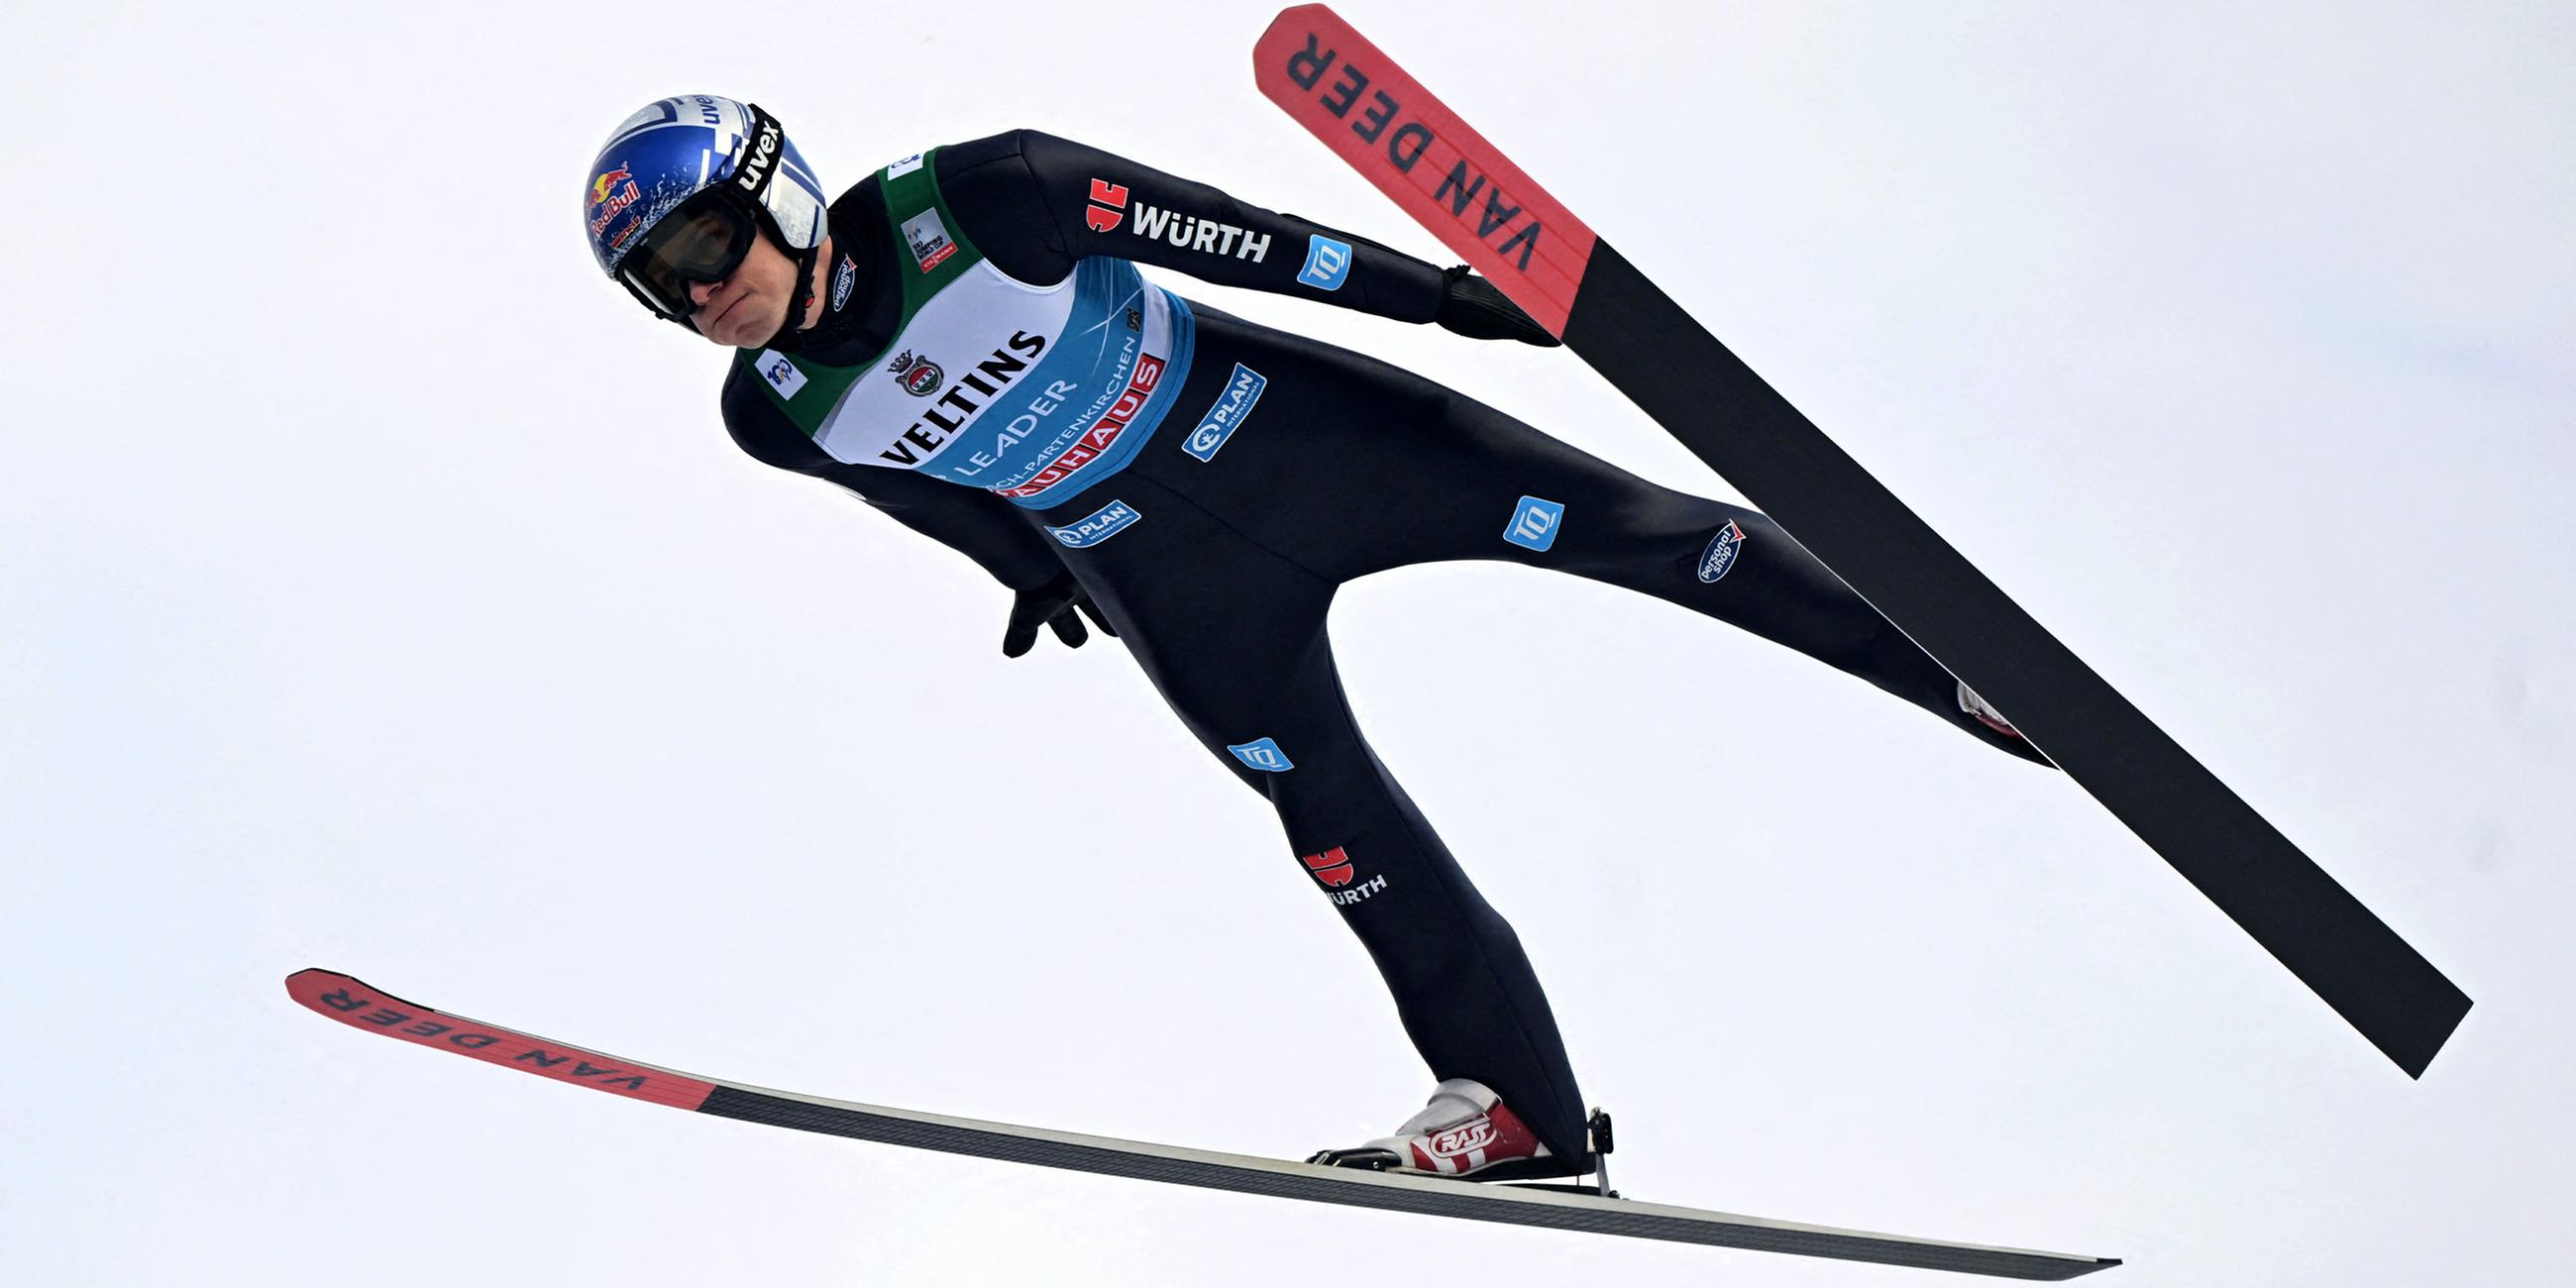 Andreas Wellinger in Aktion bei der Qualifikation am 31.12.2023 in Garmisch-Partenkirchen.